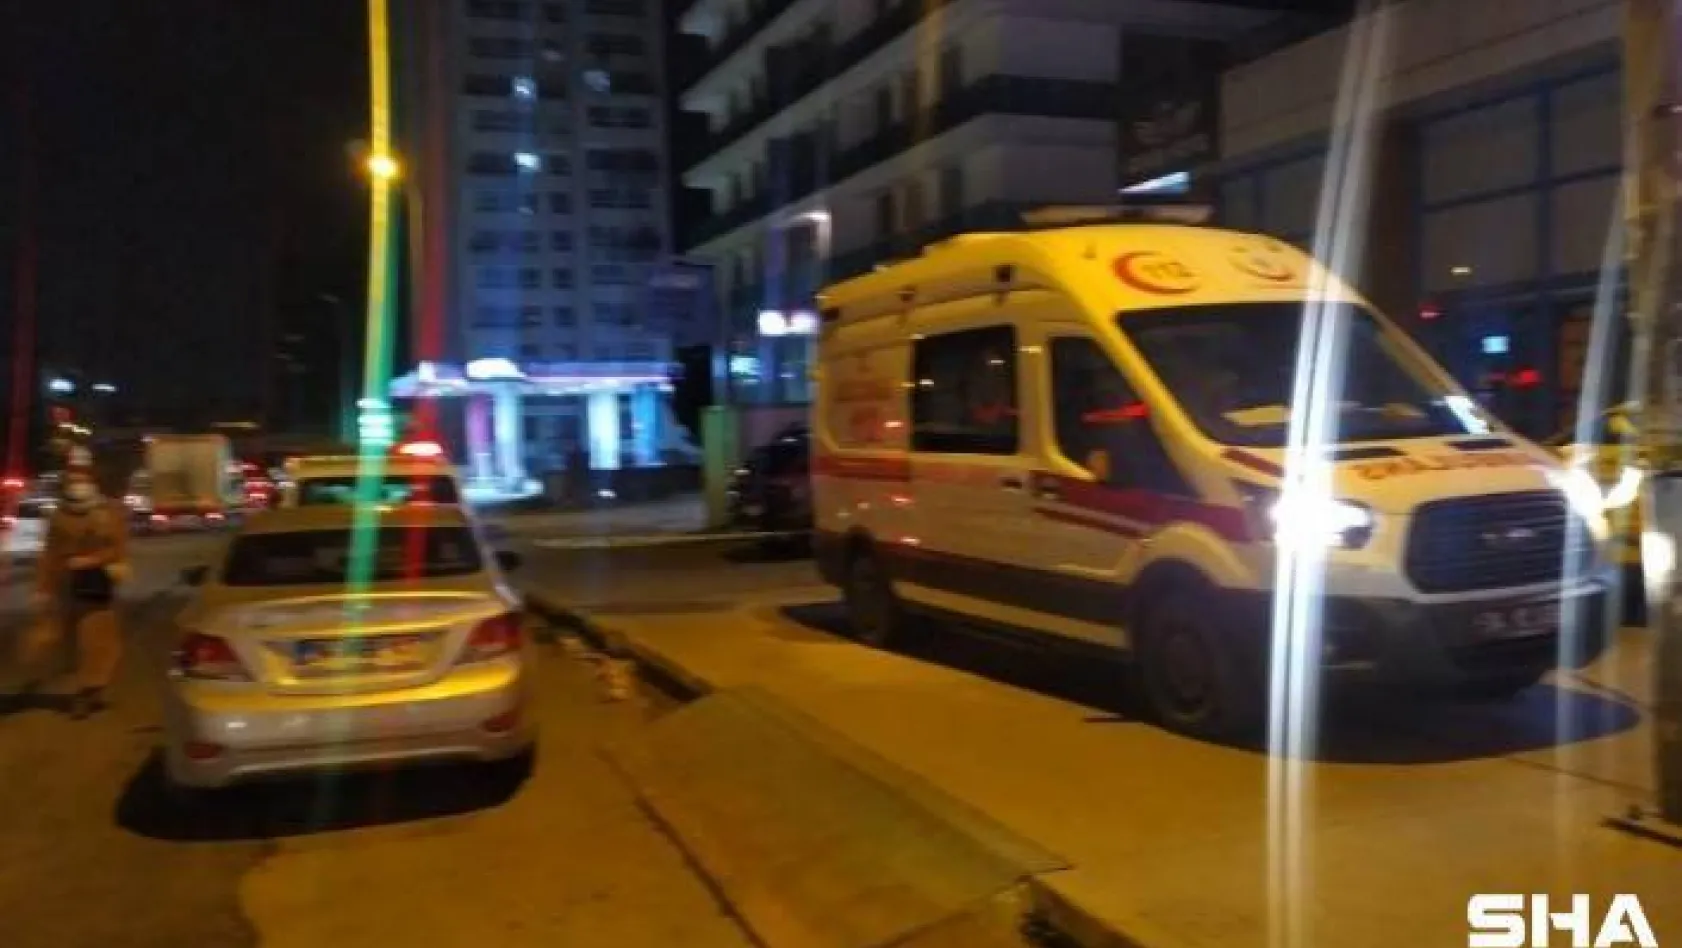 Esenyurt'ta otelin 8'inci katından aşağıya düşen 17 yaşındaki genç kız hayatını kaybetti